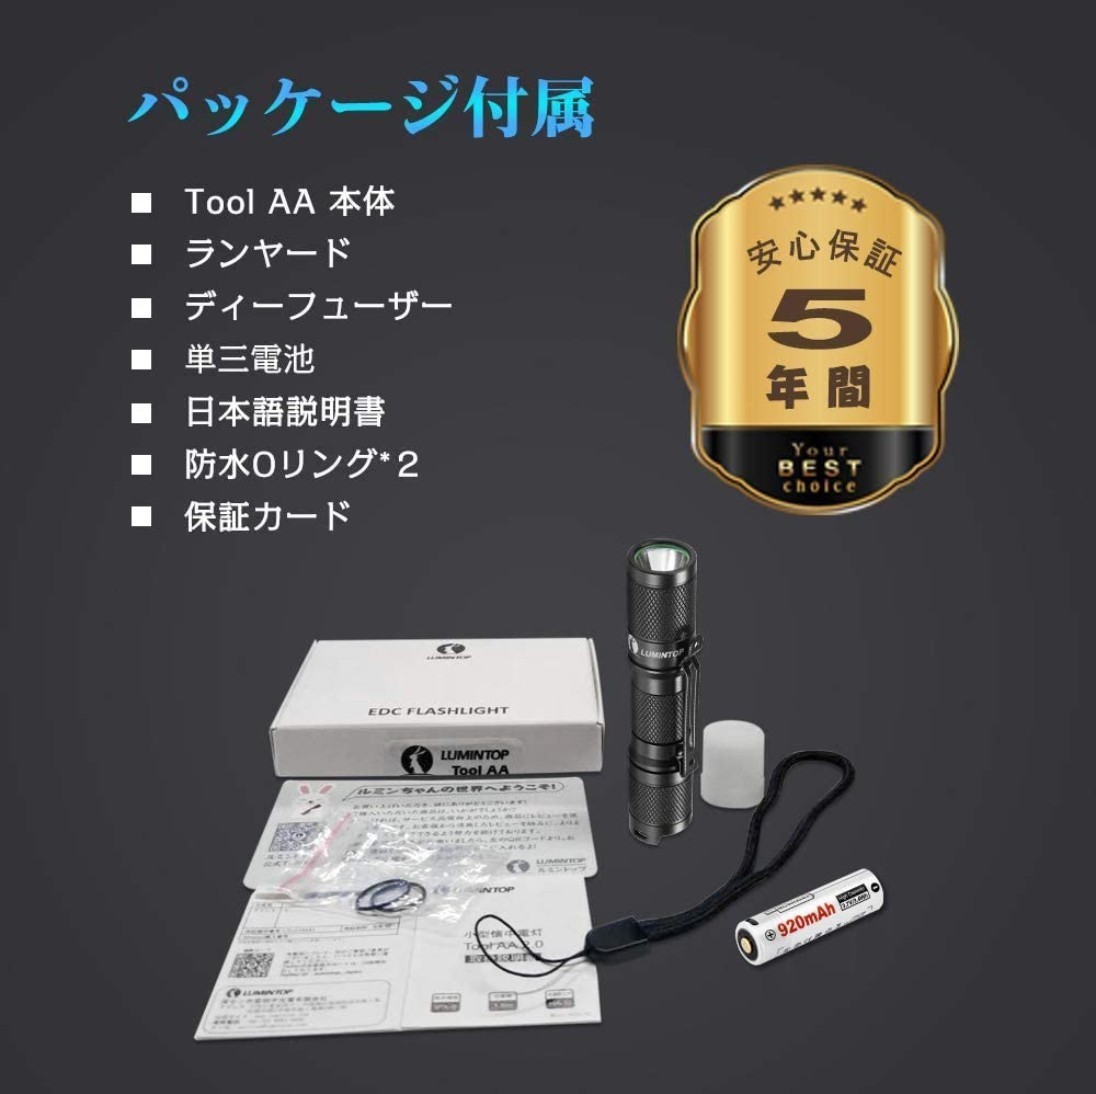 【070】LUMINTOP Tool AA 2.0 懐中電灯 電池付き